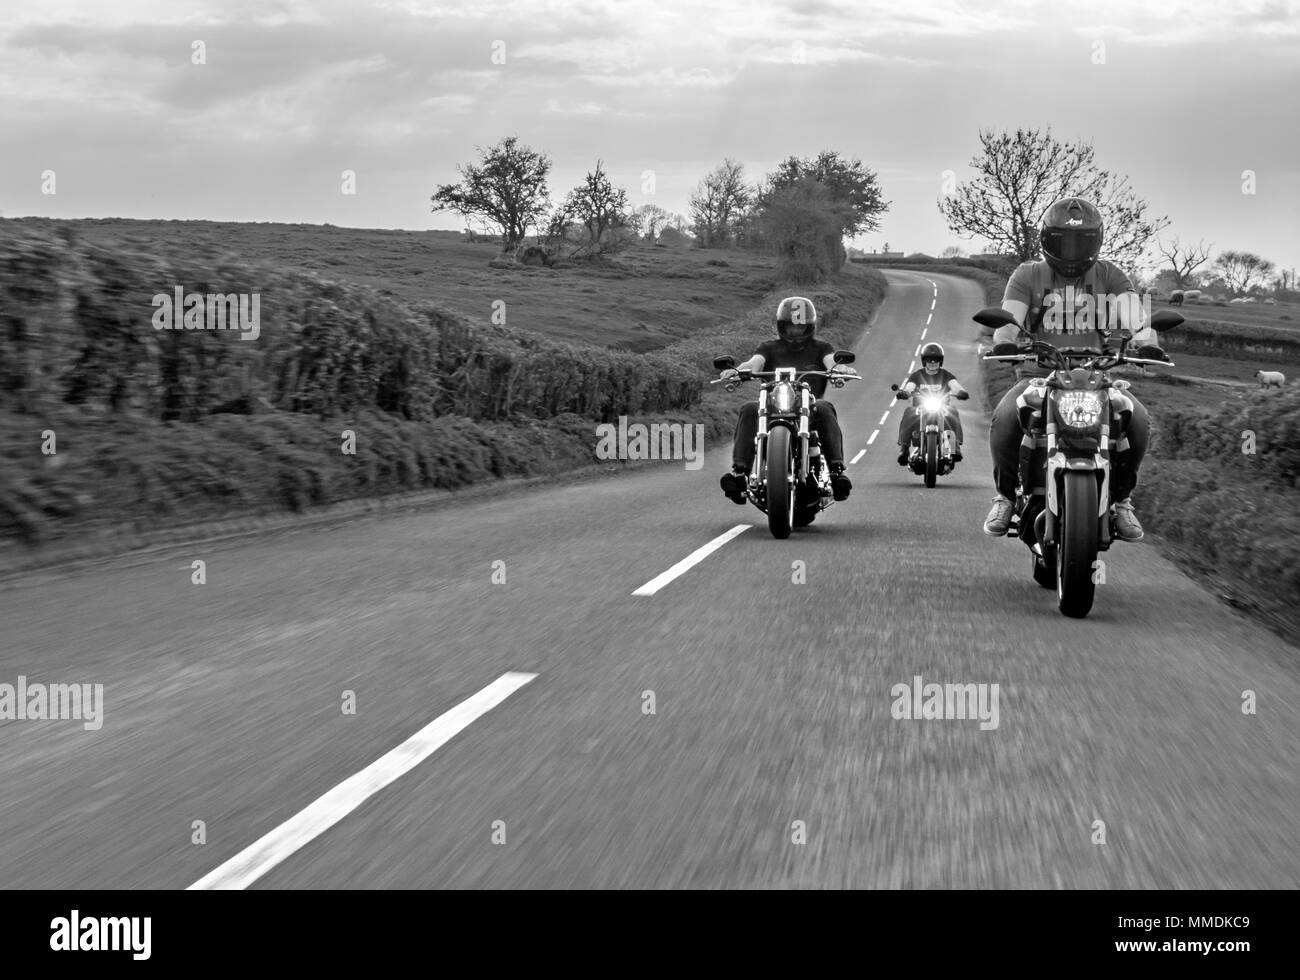 Les motards à cheval sur la route. Club de moto pour une balade en Angleterre Banque D'Images